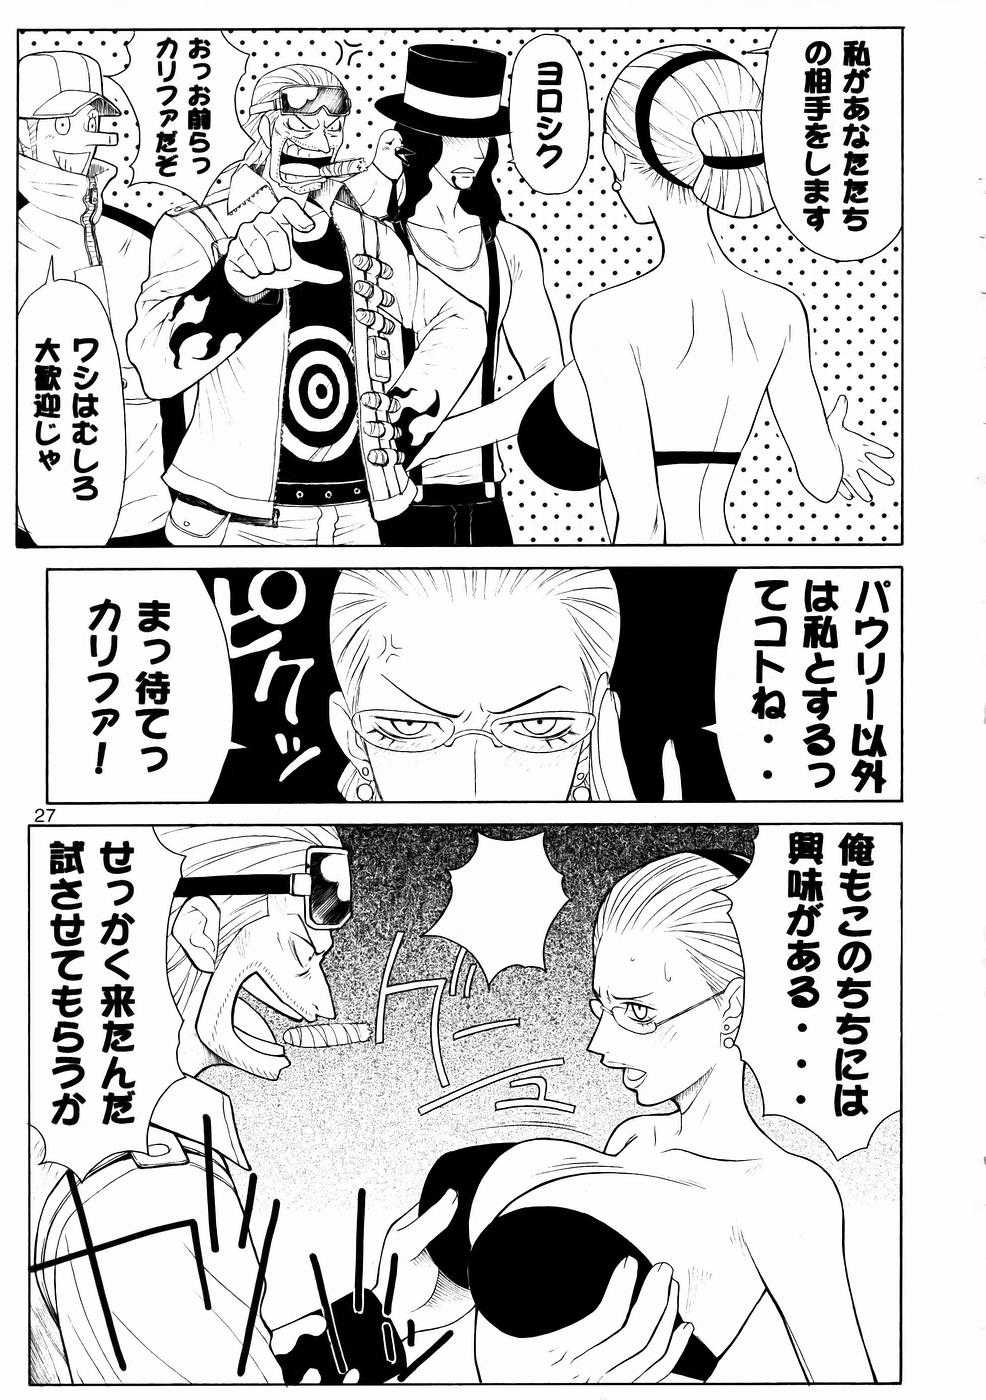 [あると屋] mikicy Vol.06 (One Piece) 